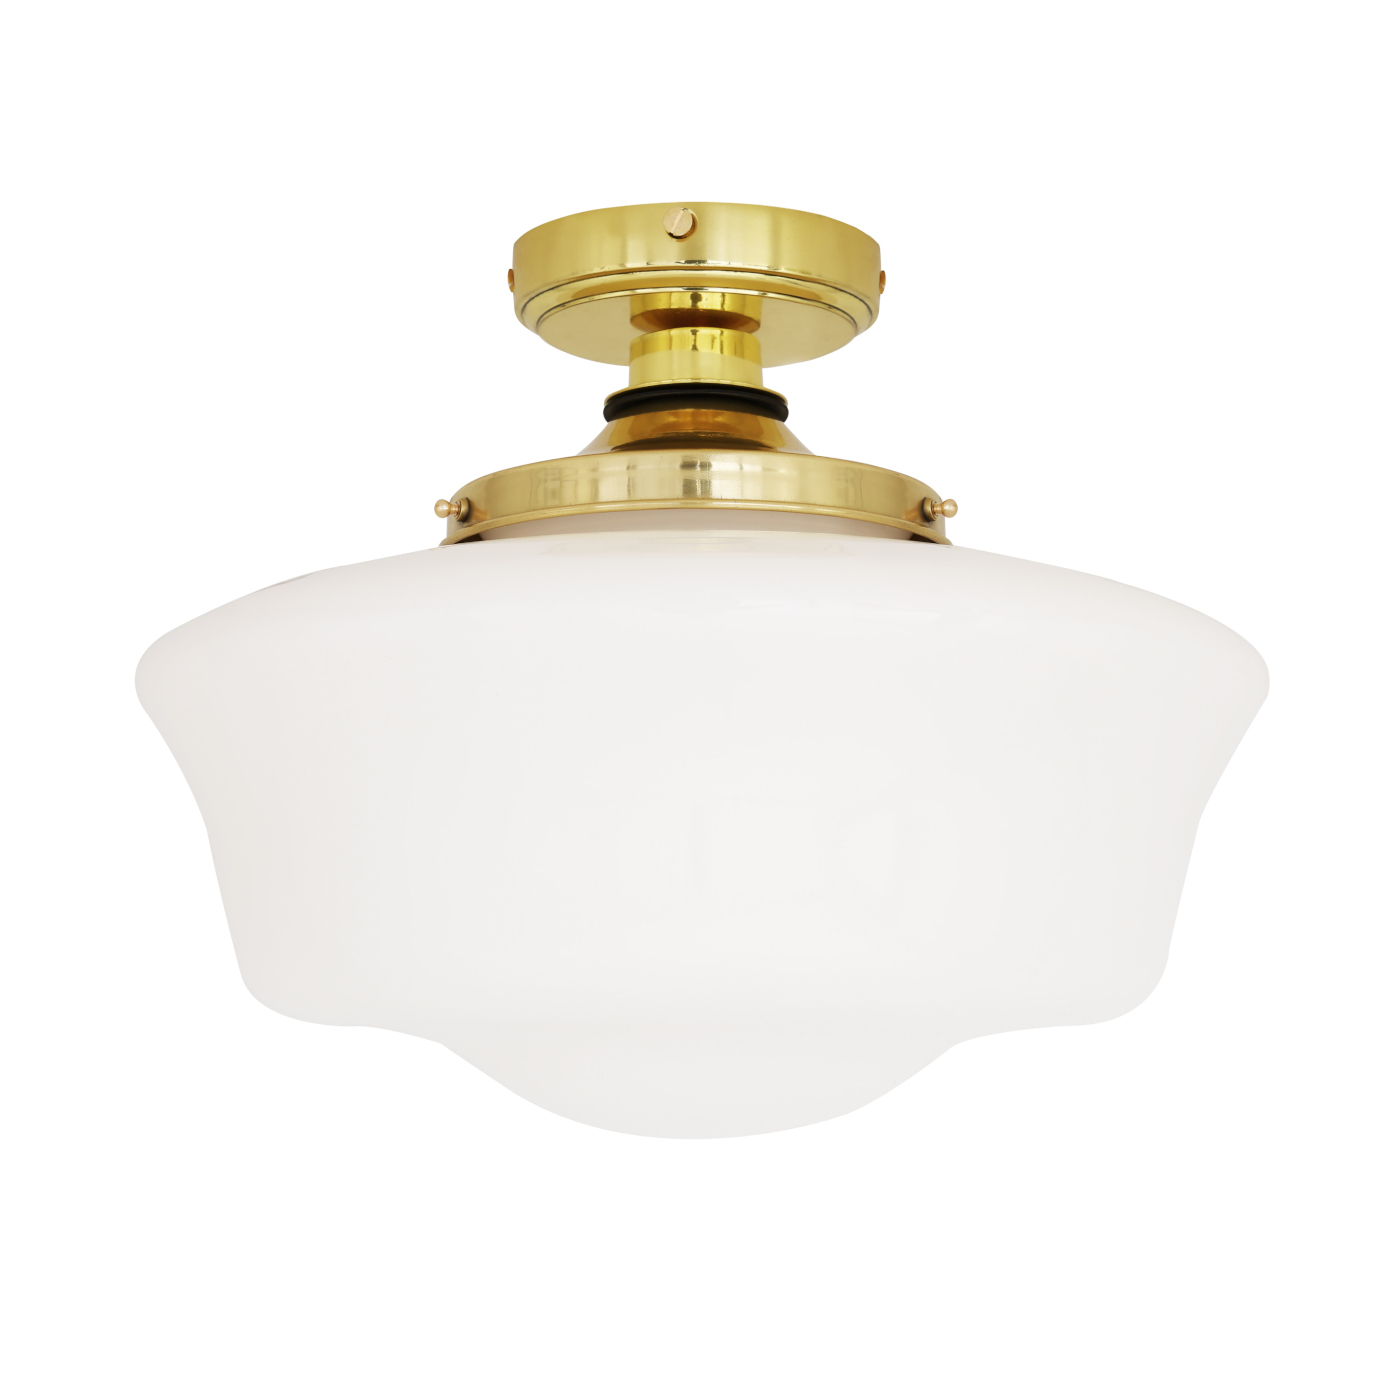 Traditionelle Badezimmer-Deckenlampe (IP44) mit Glasschirm Ø 35 cm: Traditionelle Badezimmer-Deckenlampe, hier Messing poliert